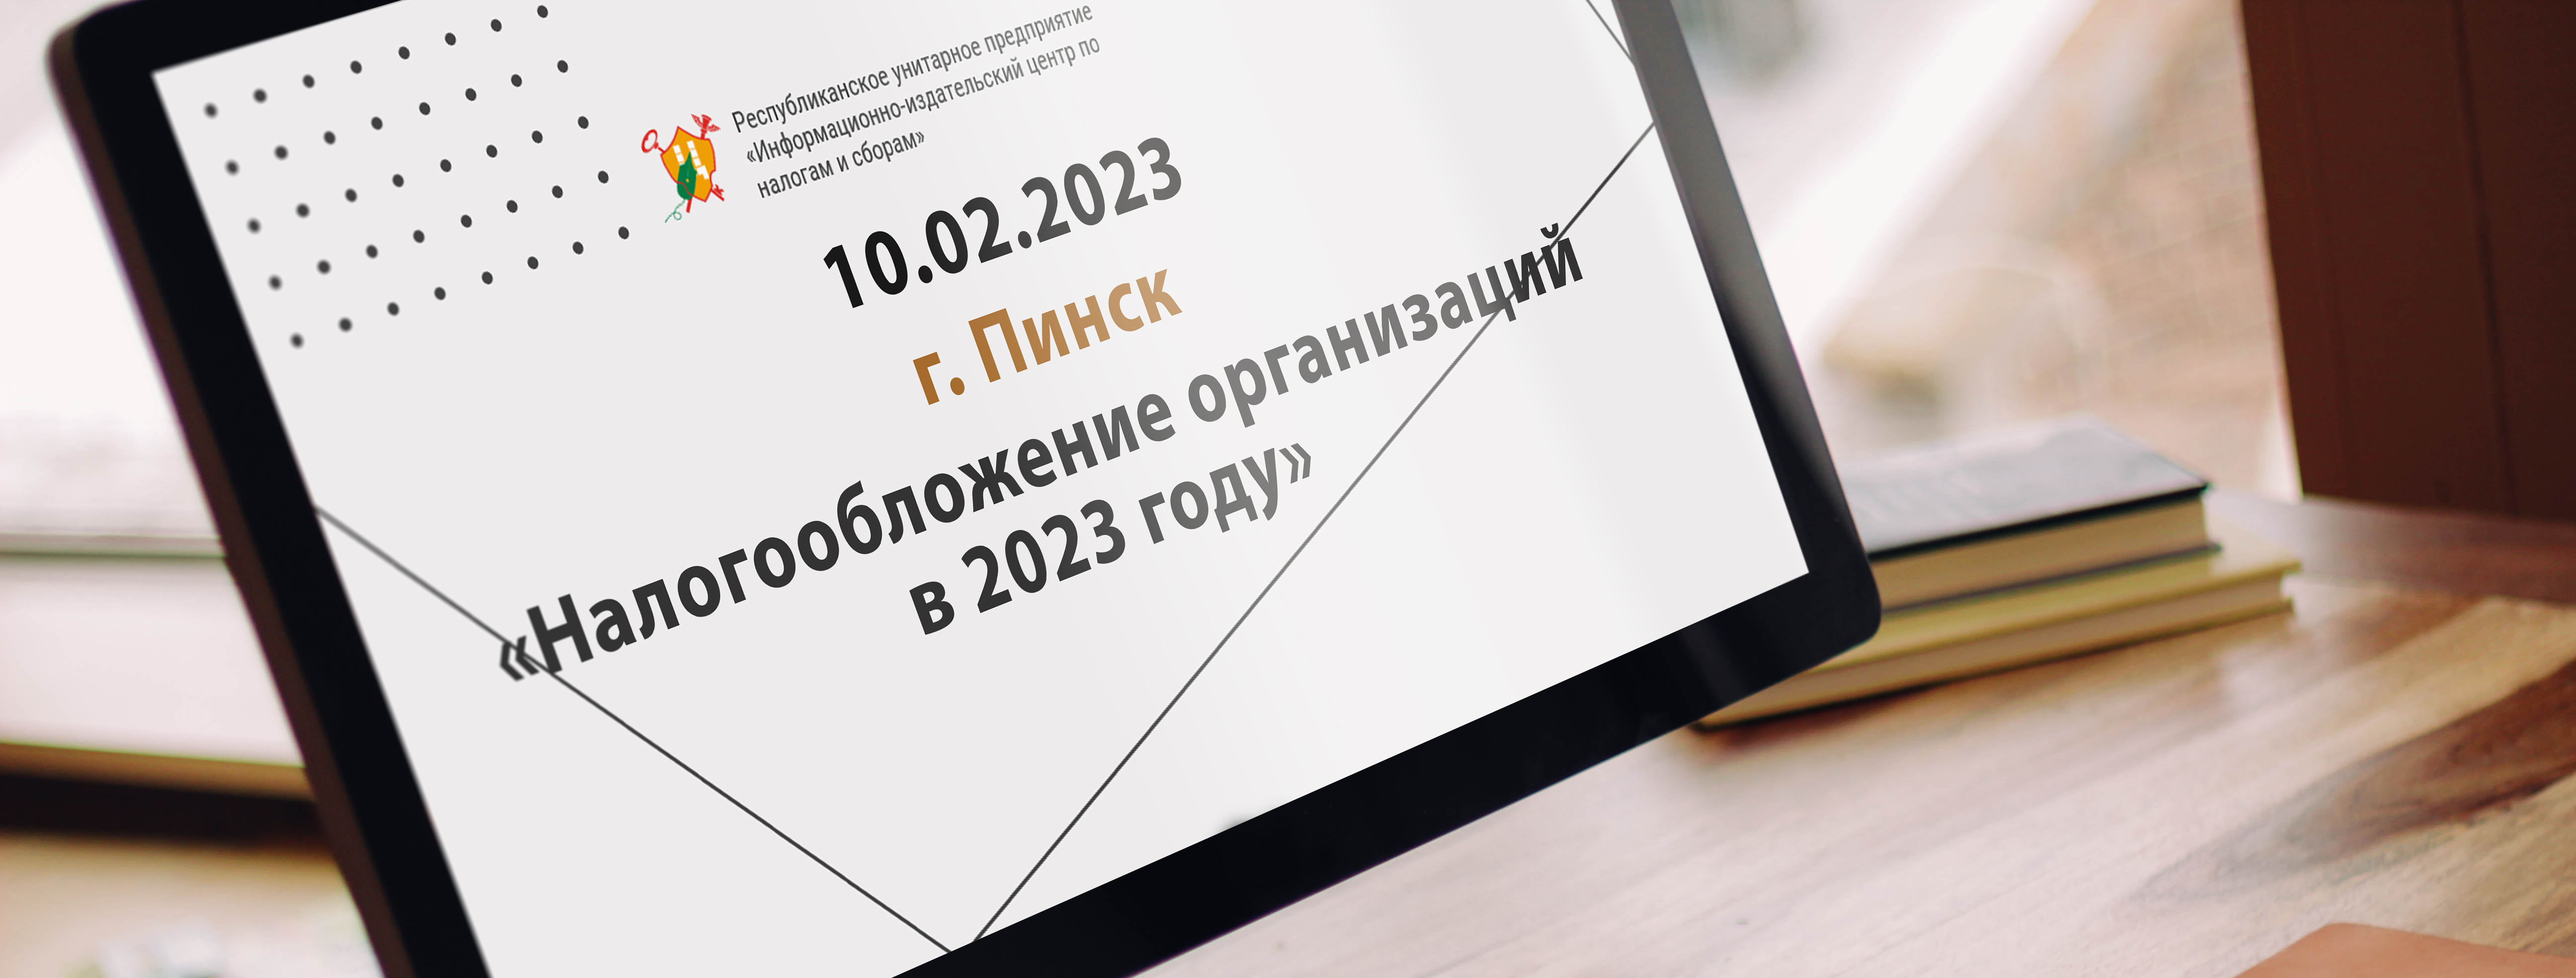 10.02.2023 г. Пинск «Налогообложение организаций в 2023 году»